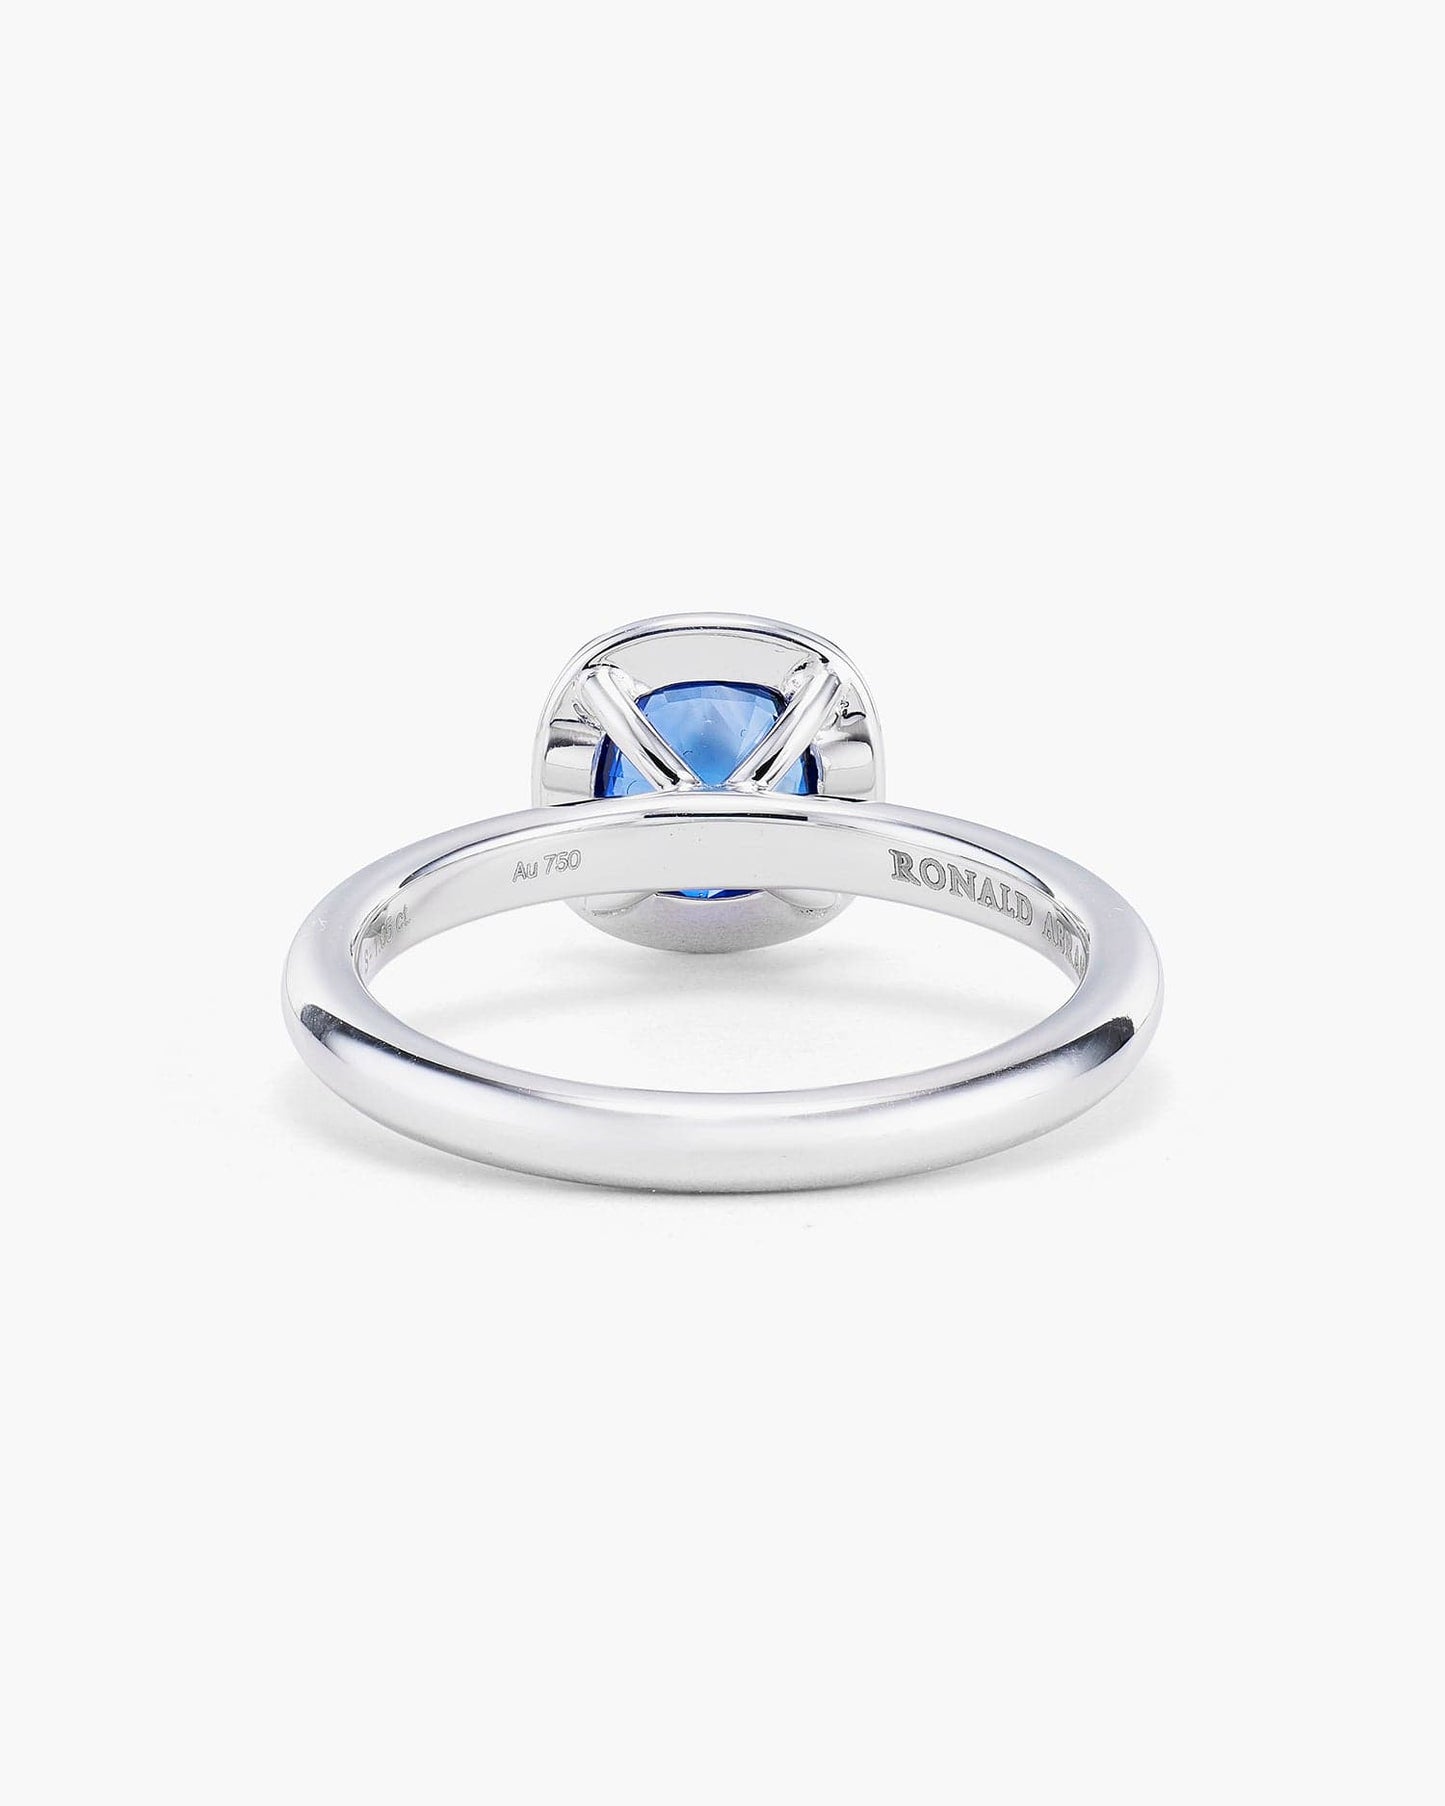 1.05 carat Cushion Cut Sapphire Ring